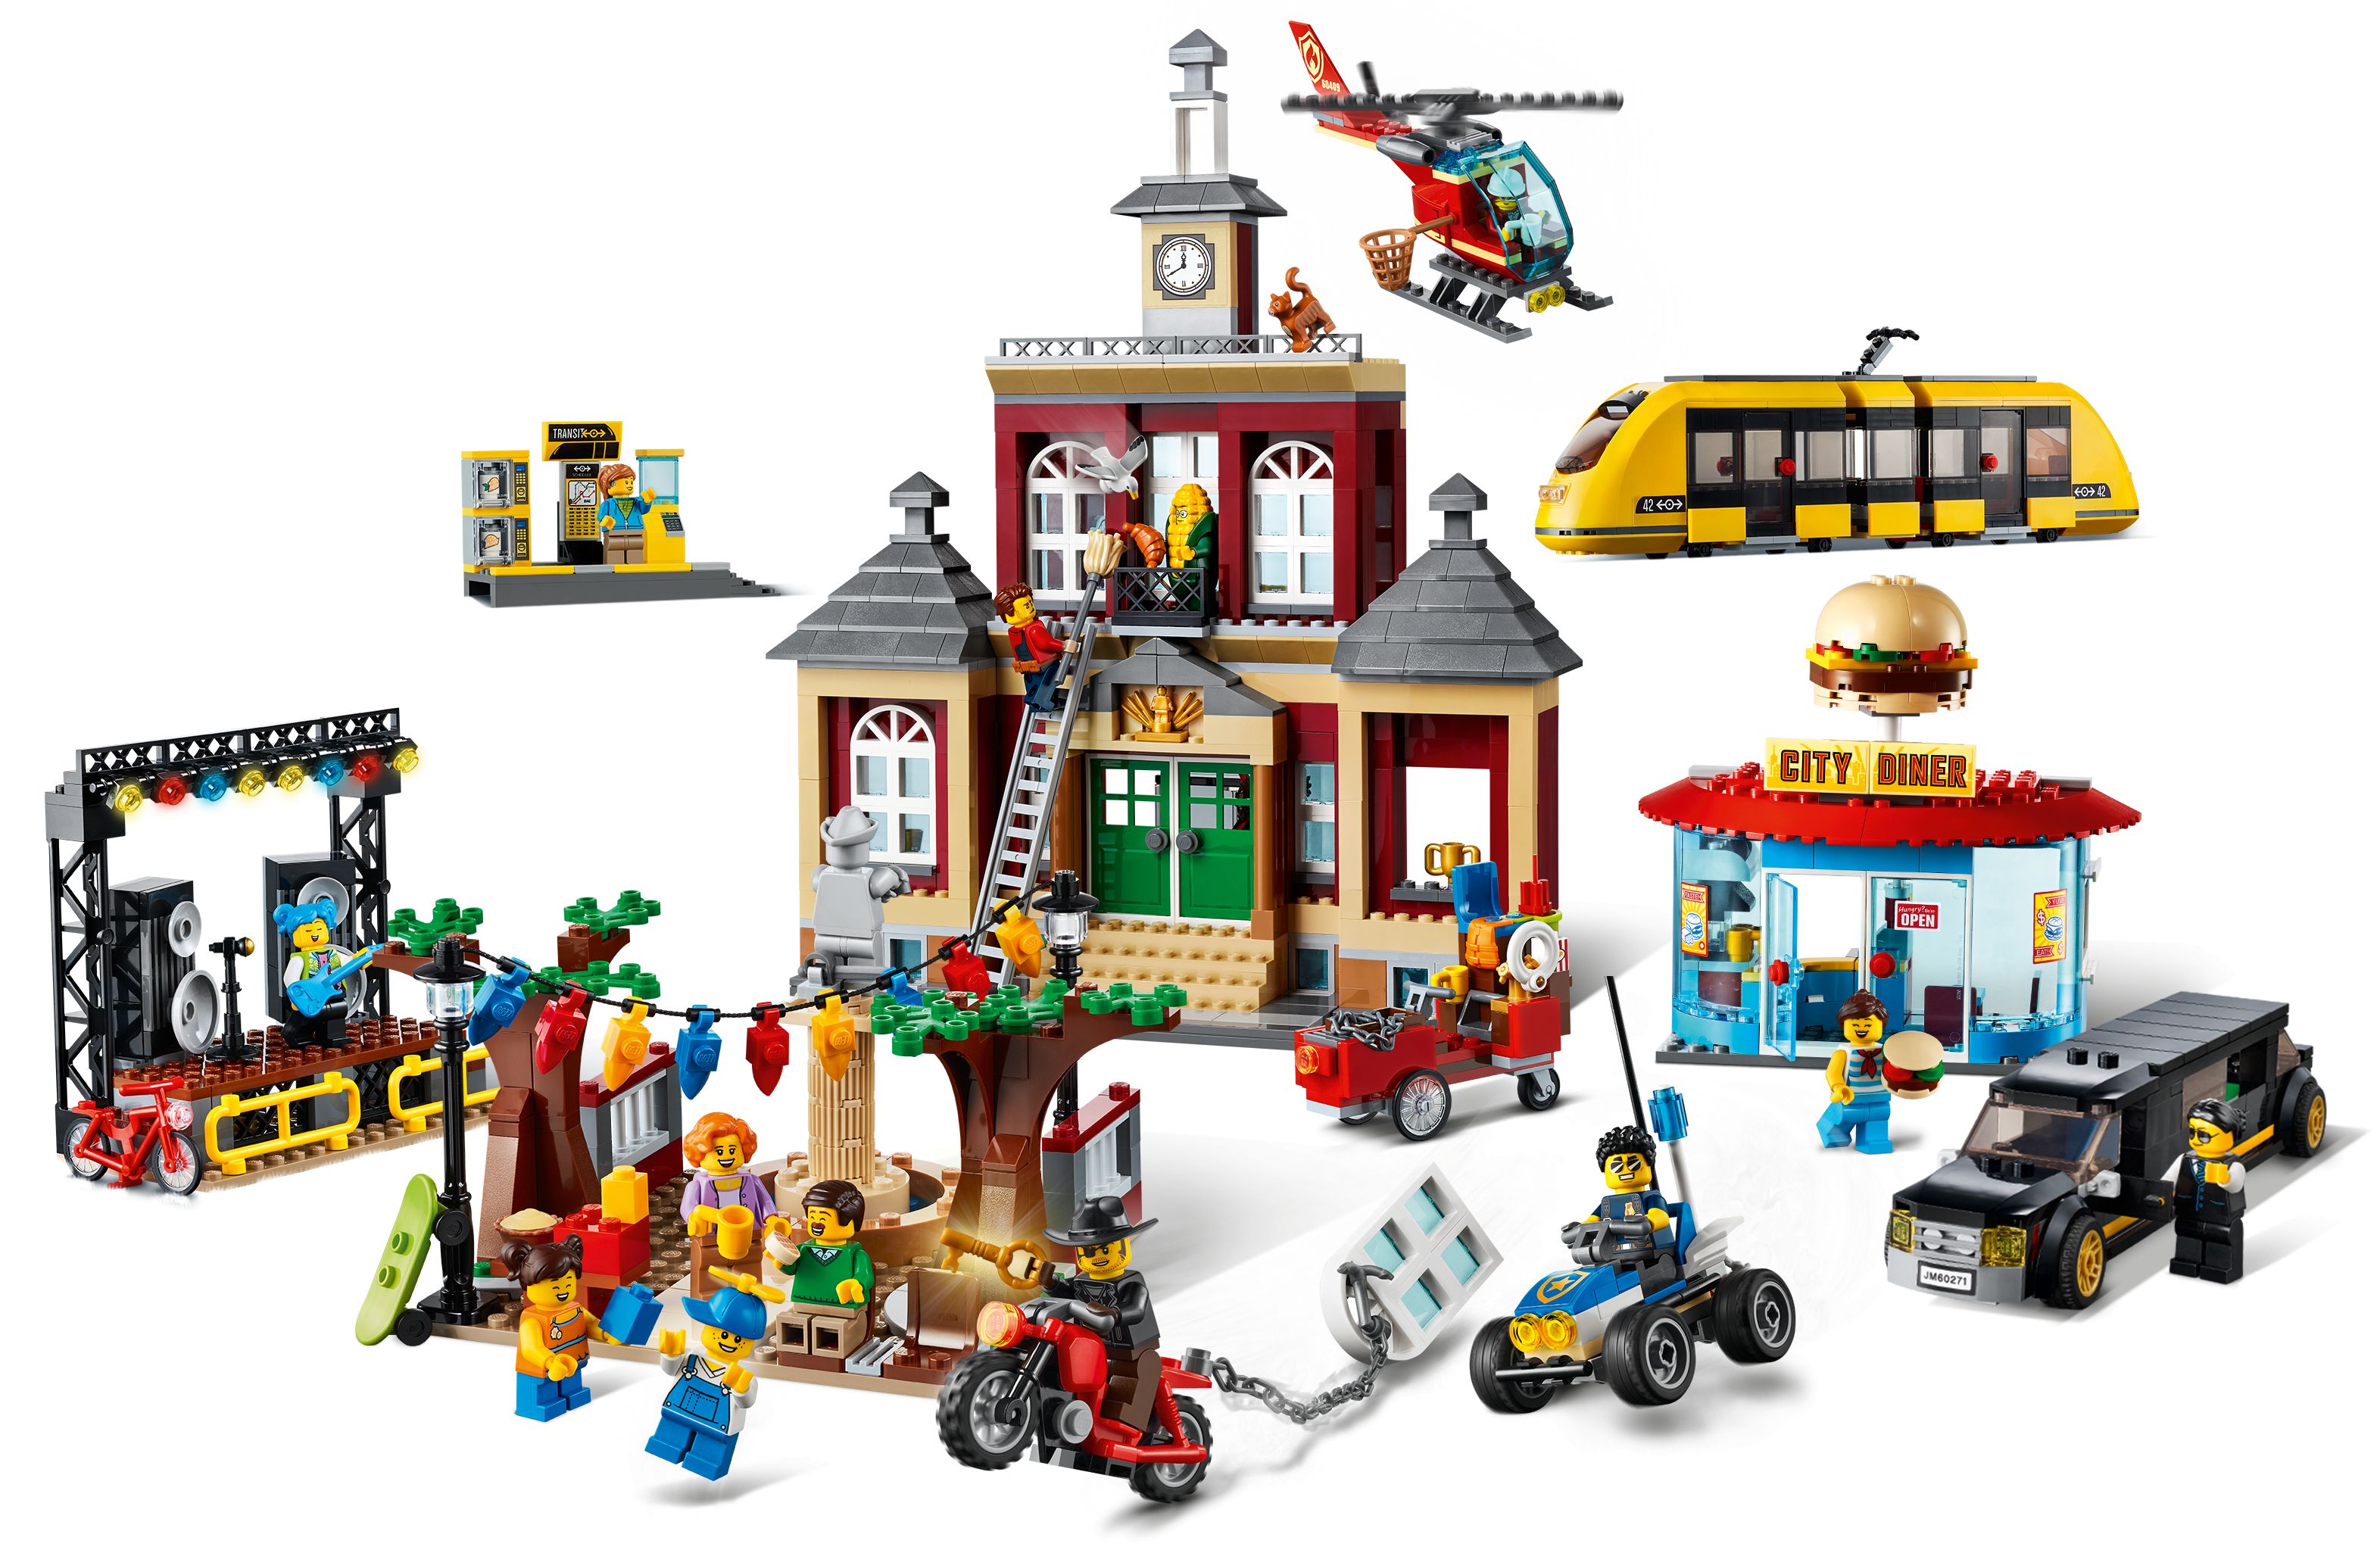 LEGO City 60271 Stadtplatz LEGO_60271_alt2.jpg